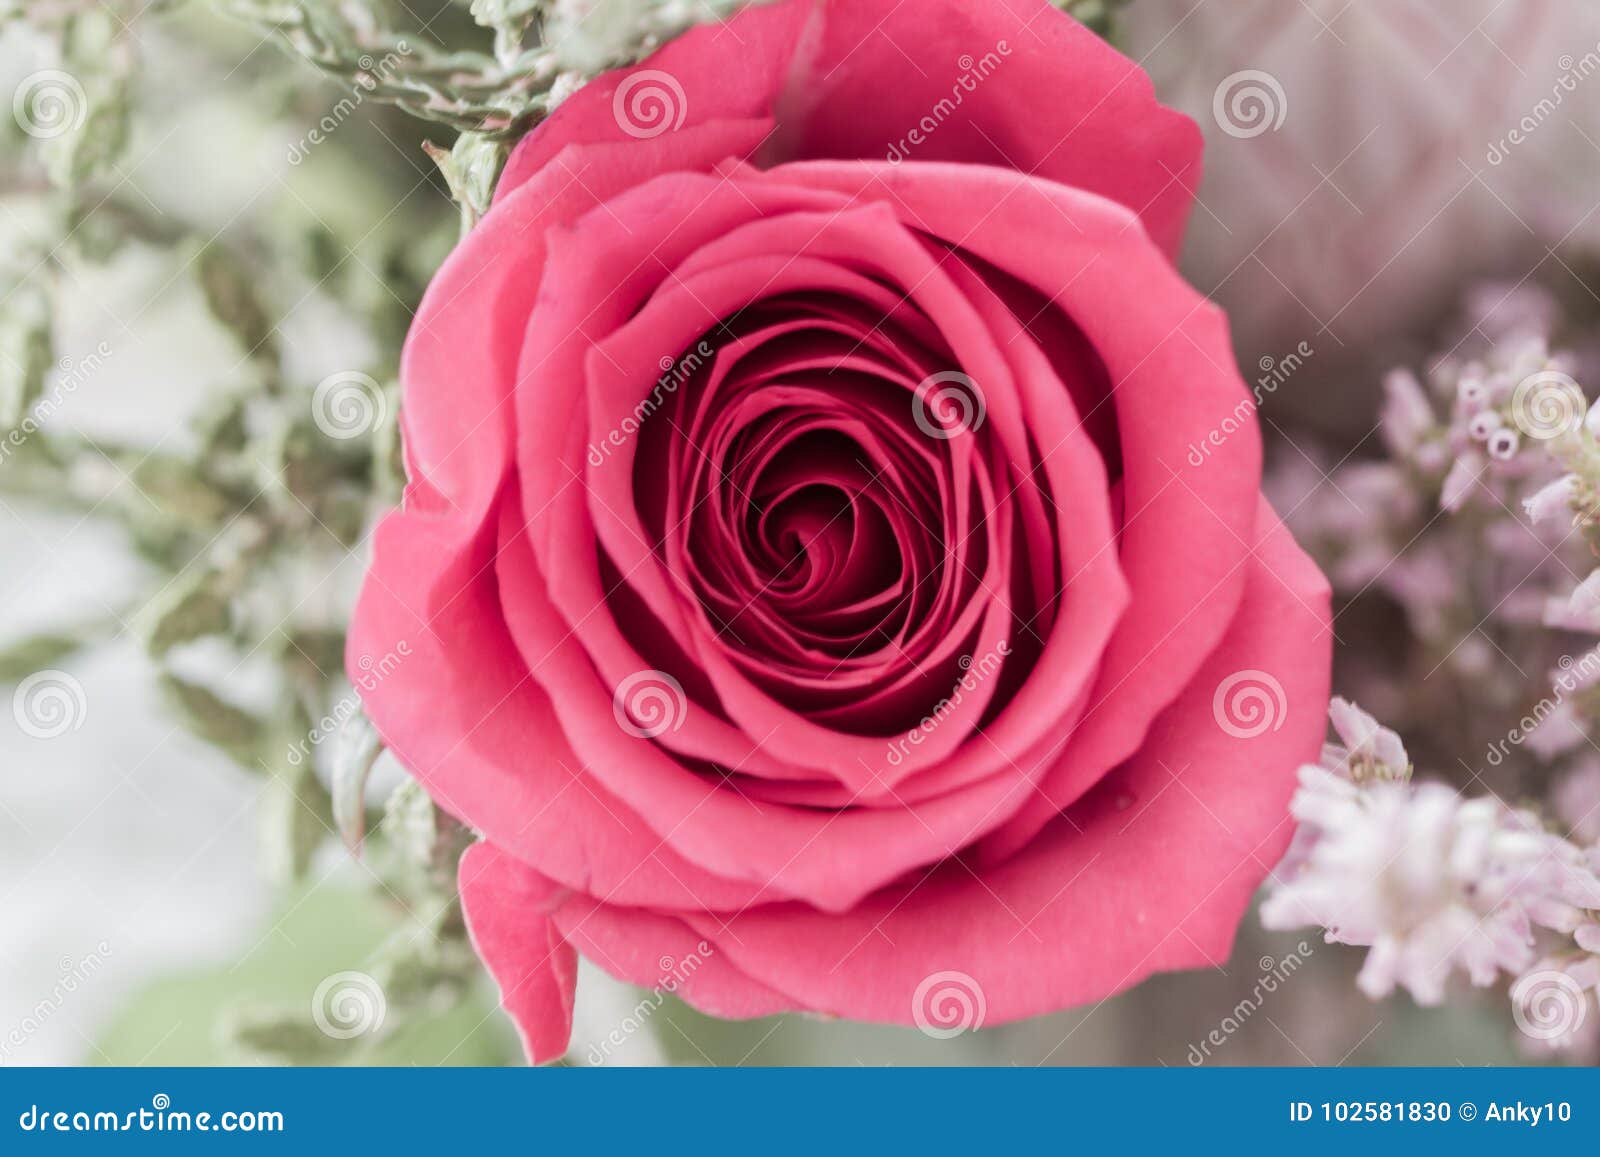 Sola Macro Polvorienta De La Rosa Del Rosa Desde Arriba Foto De